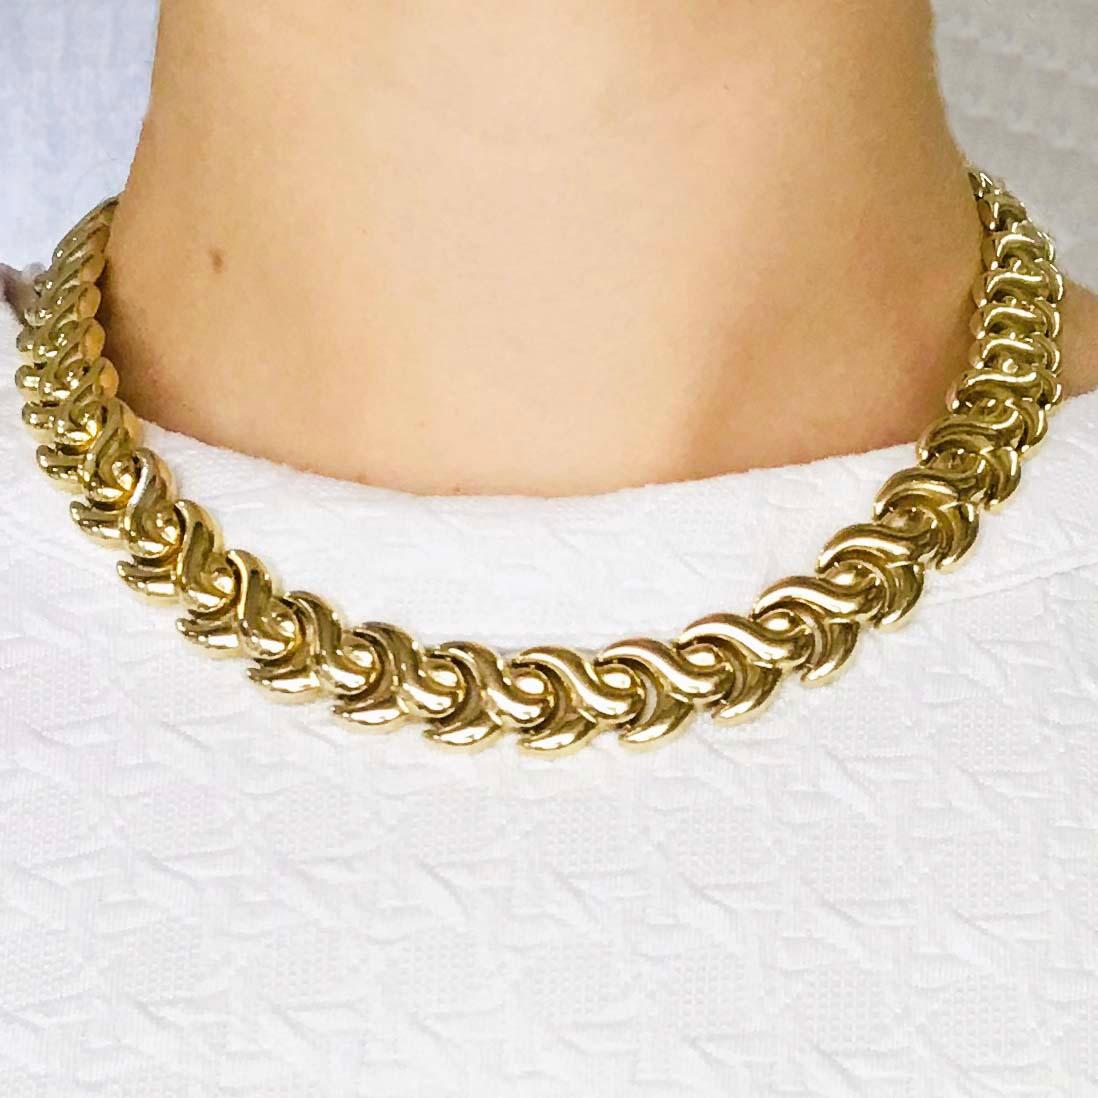 sedusa chain necklace